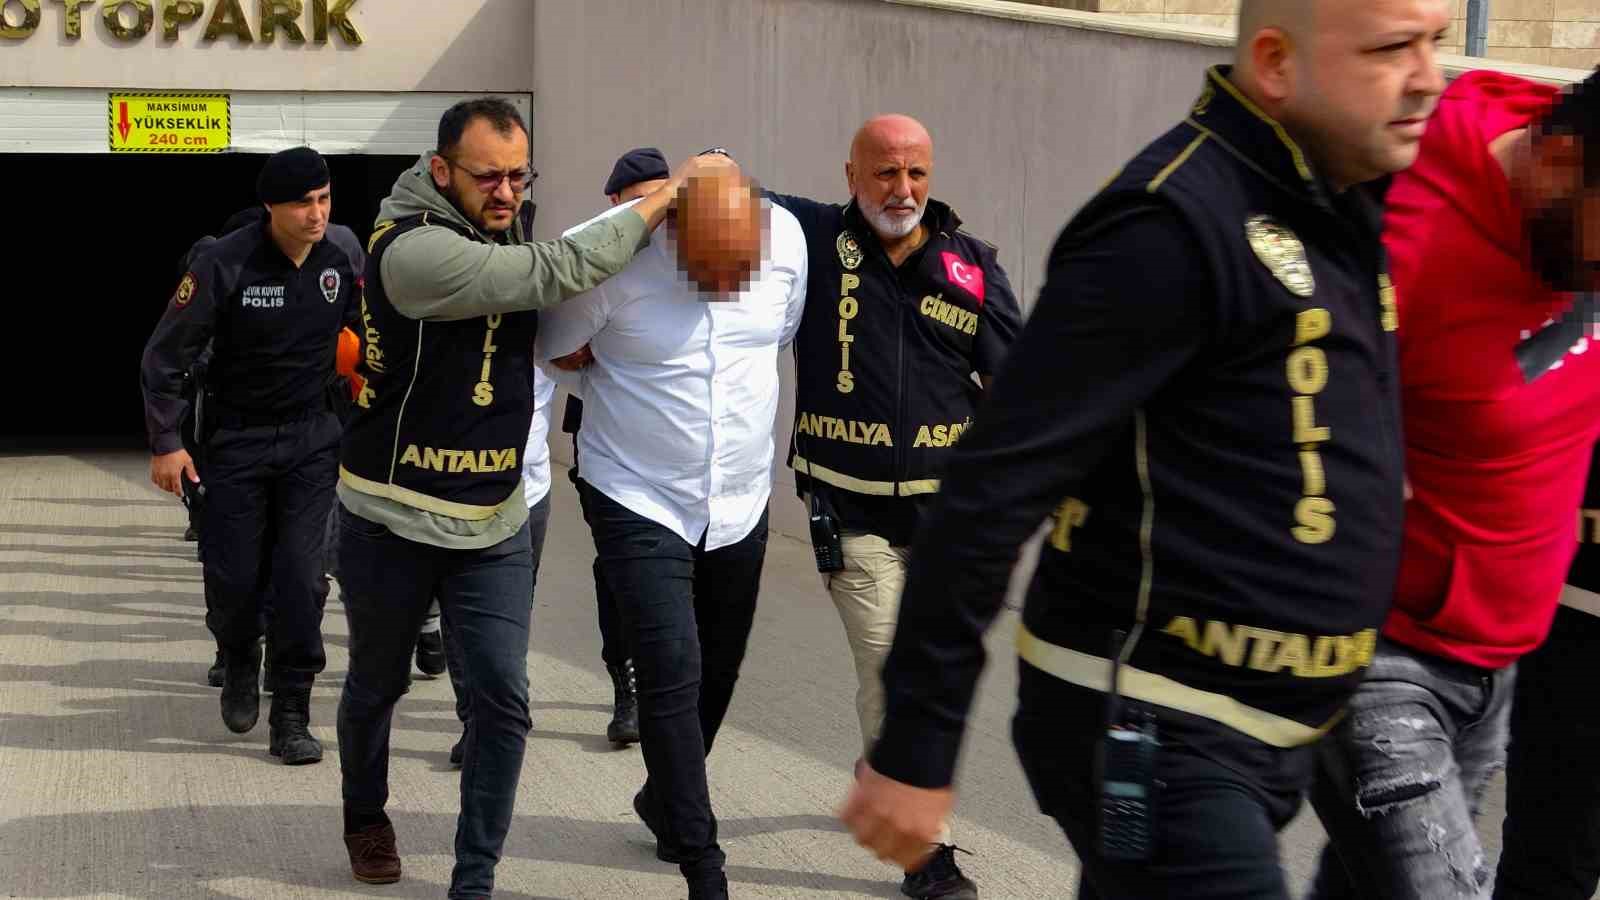 Antalya’da “paket” operasyonunda Paket kardeşler tutuklandı
